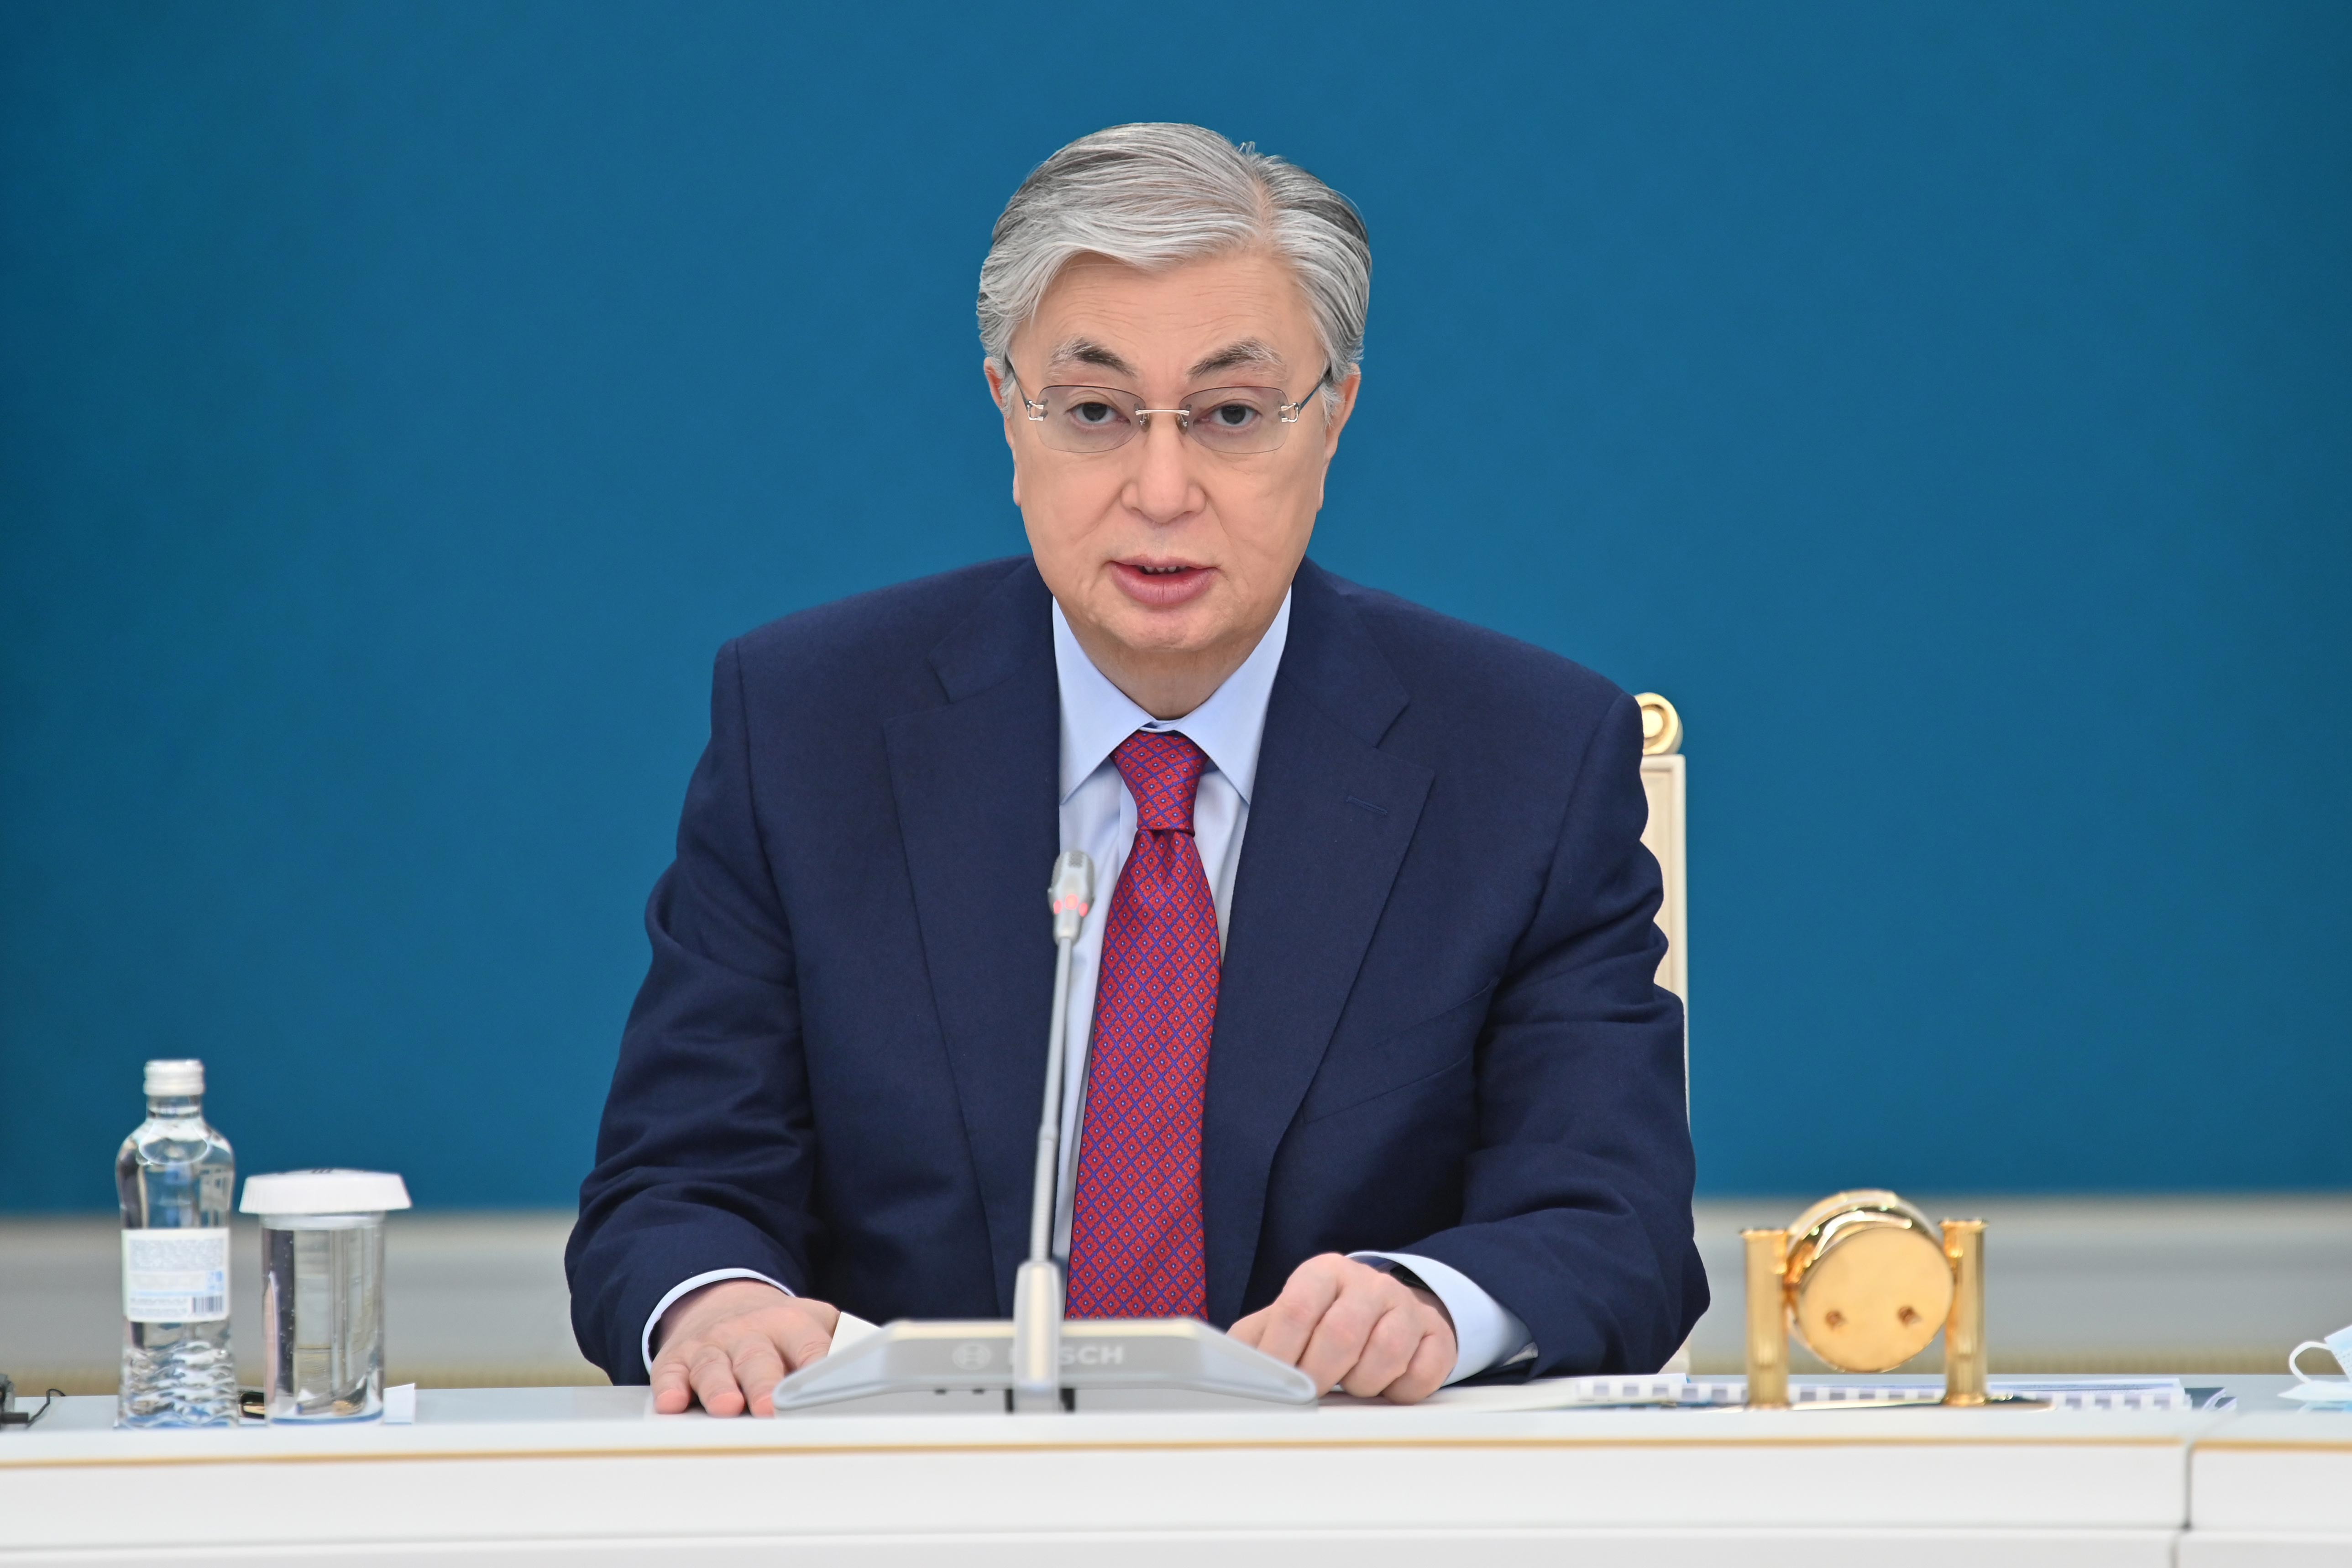 Глава государства провел заседание Высшего совета по реформам